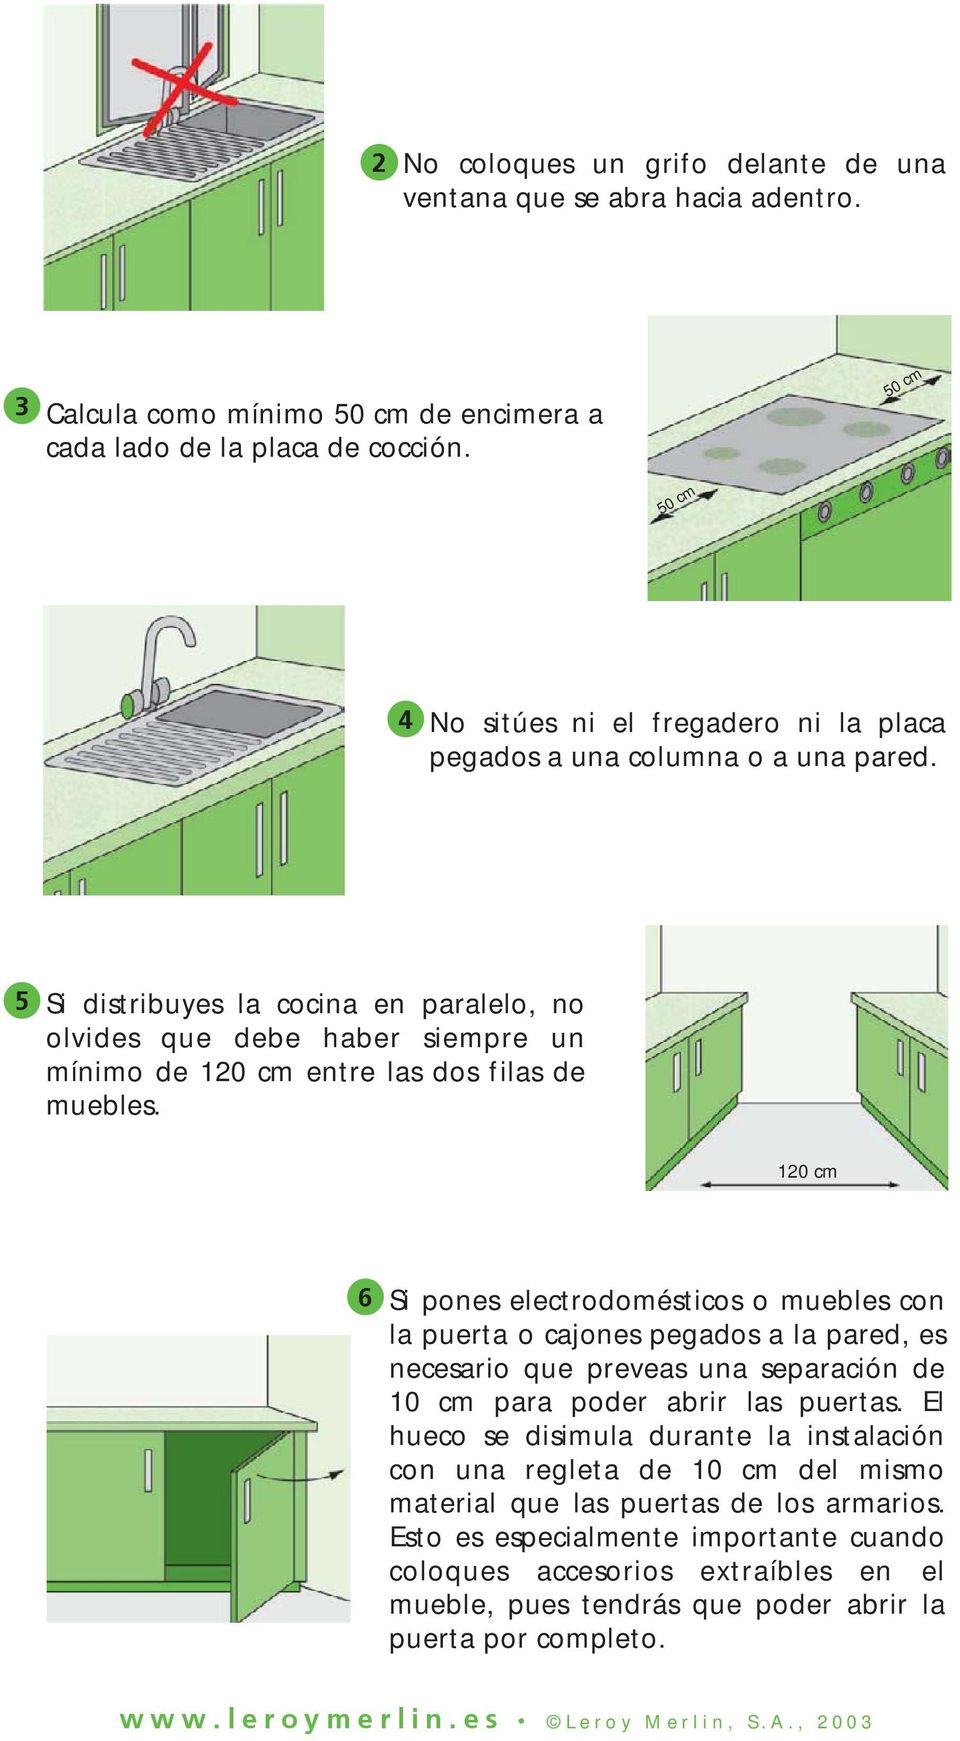 5 Si distribuyes la cocina en paralelo, no olvides que debe haber siempre un mínimo de 120 cm entre las dos filas de muebles.